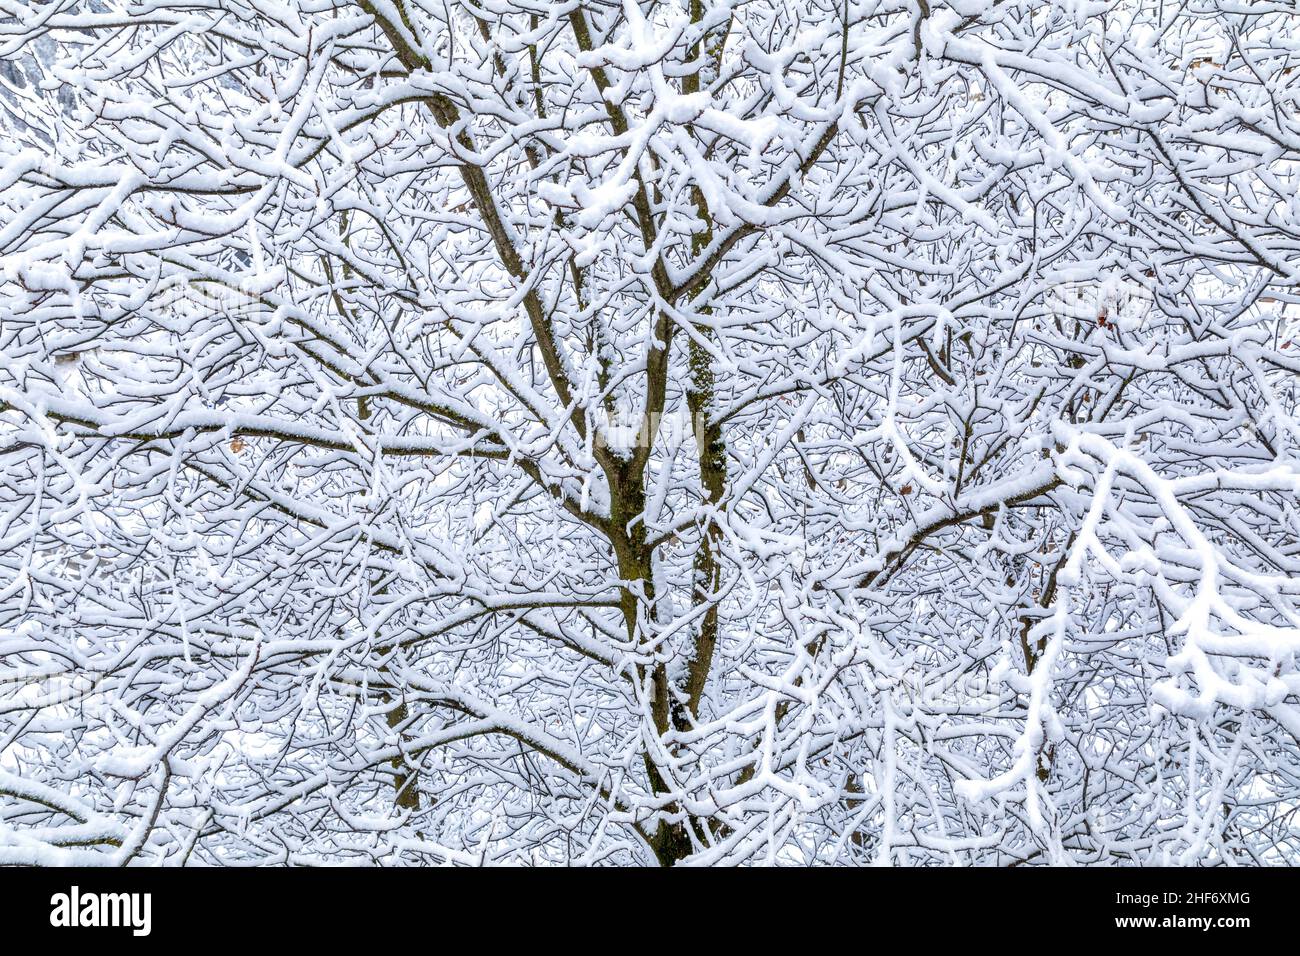 Italia, Veneto, provincia de Belluno, Dolomitas, ramas nevadas de árboles caducifolios Foto de stock